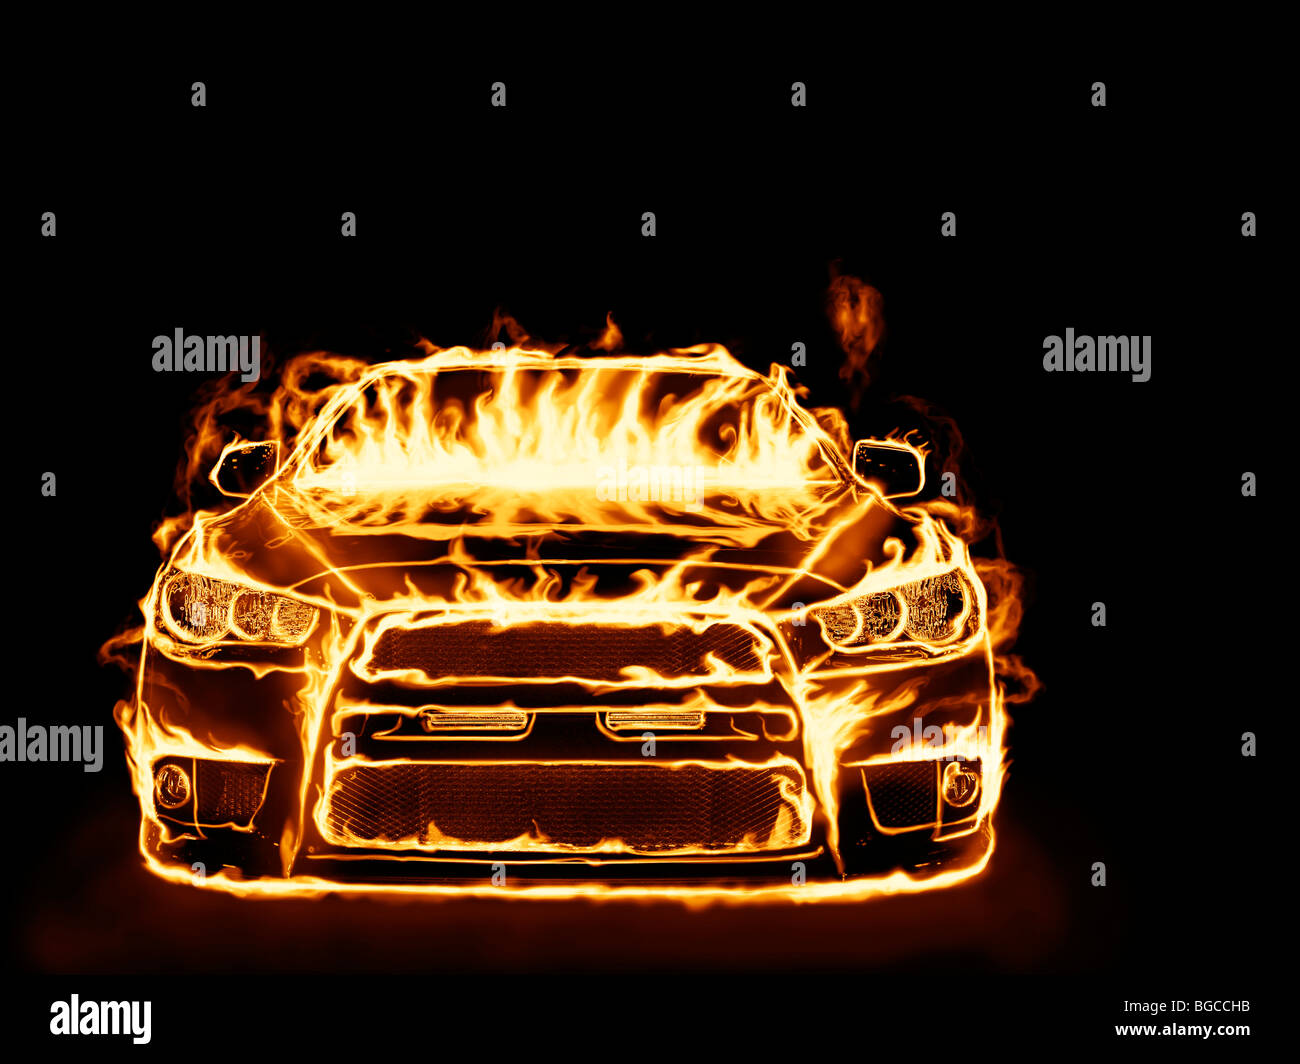 Licencia e impresiones en MaximImages.com - cubierto con llamas coche deportivo aislado sobre fondo negro Foto de stock